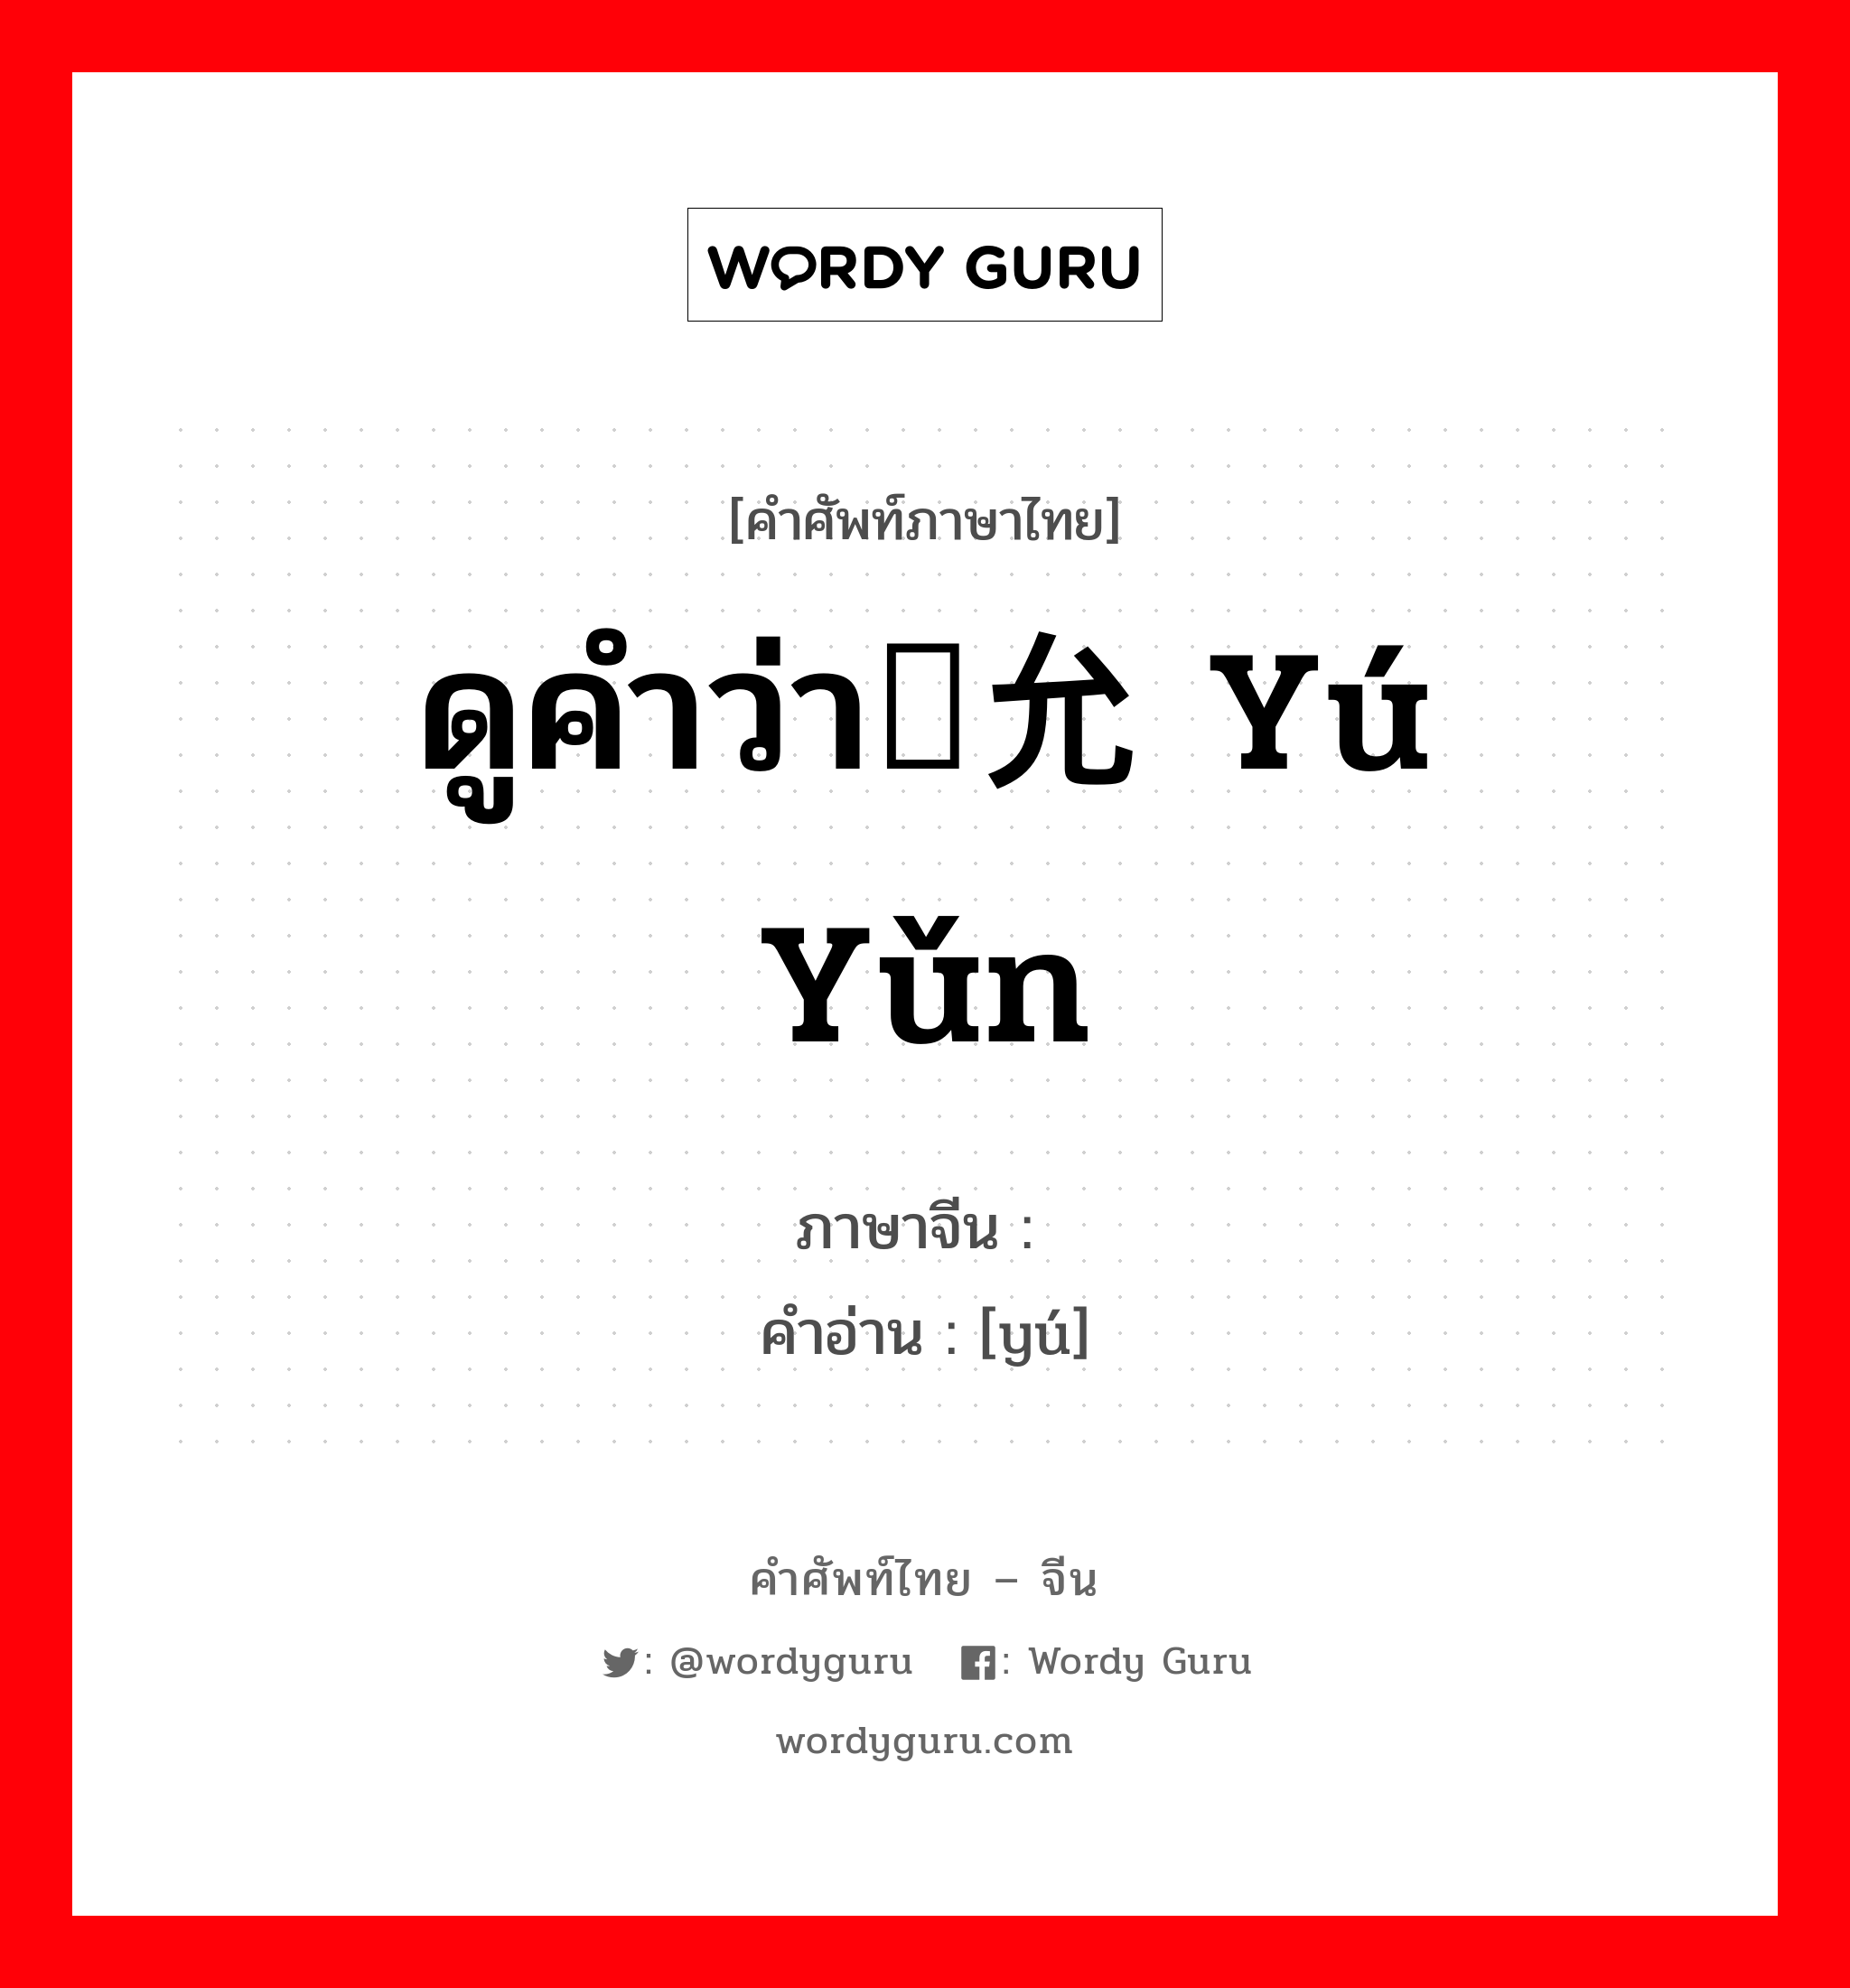 ดูคำว่า俞允 yú yǔn ภาษาจีนคืออะไร, คำศัพท์ภาษาไทย - จีน ดูคำว่า俞允 yú yǔn ภาษาจีน 俞 คำอ่าน [yú]